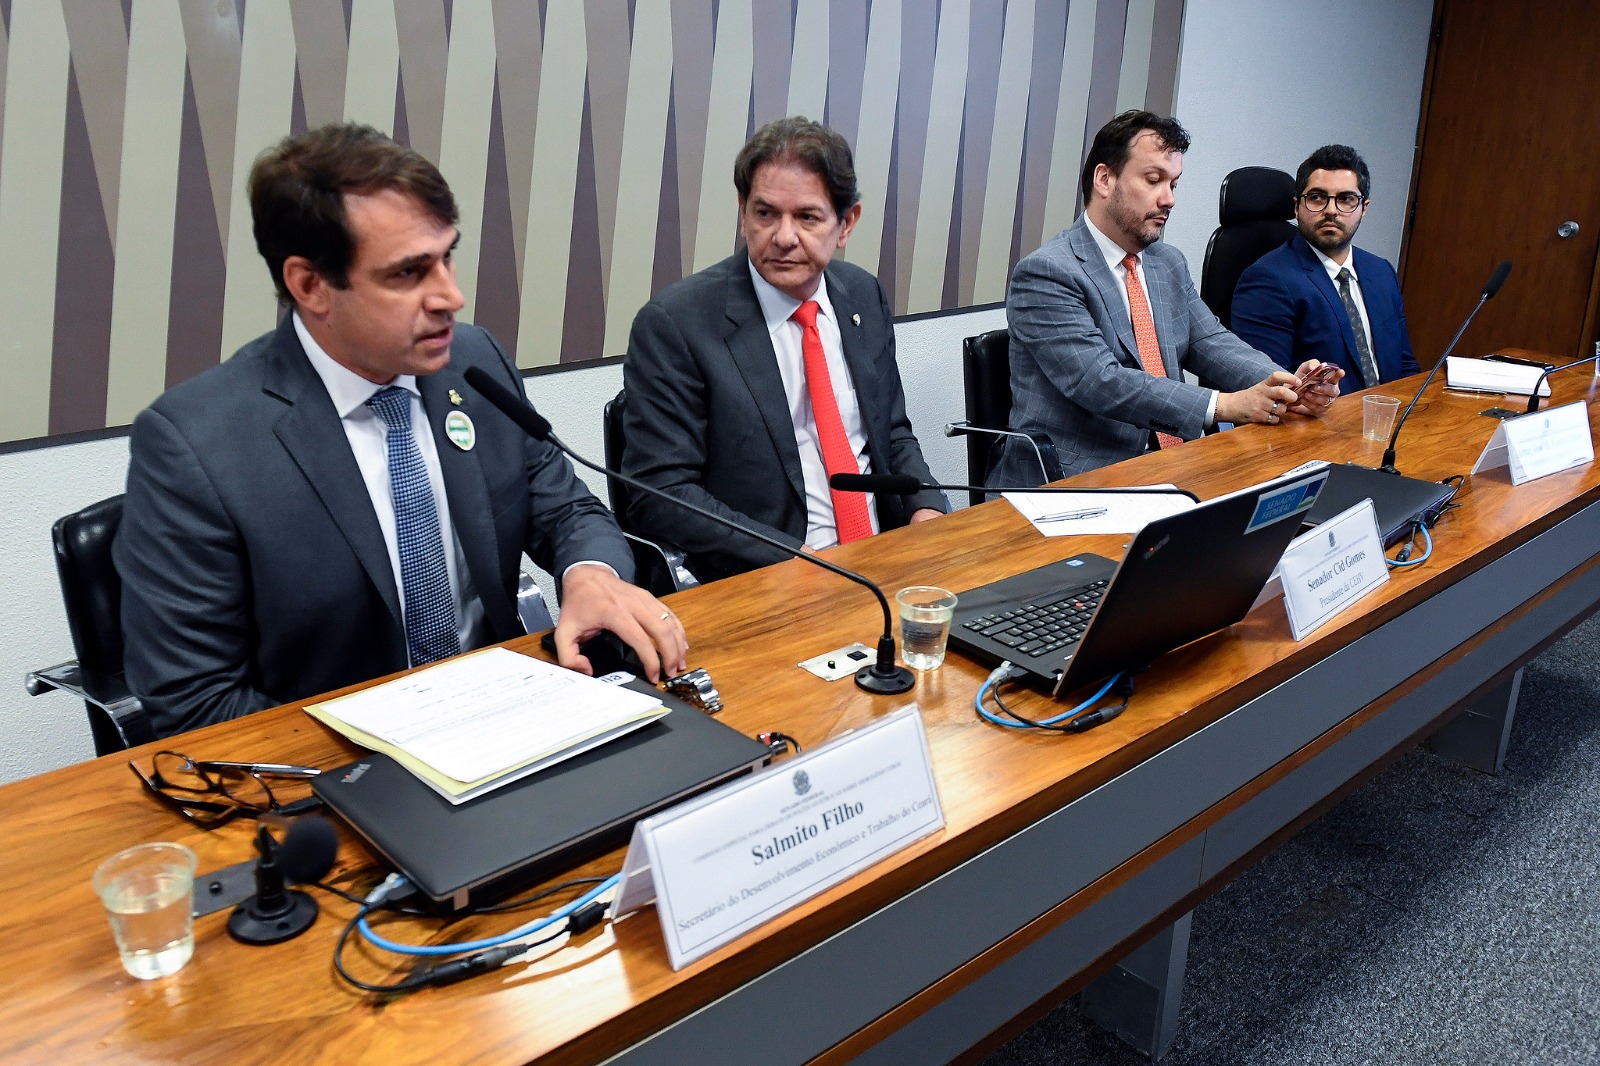 “O Brasil nao pode perder competitividade ”, diz Salmito Filho sobre projetos de Hidrogênio Verde no País